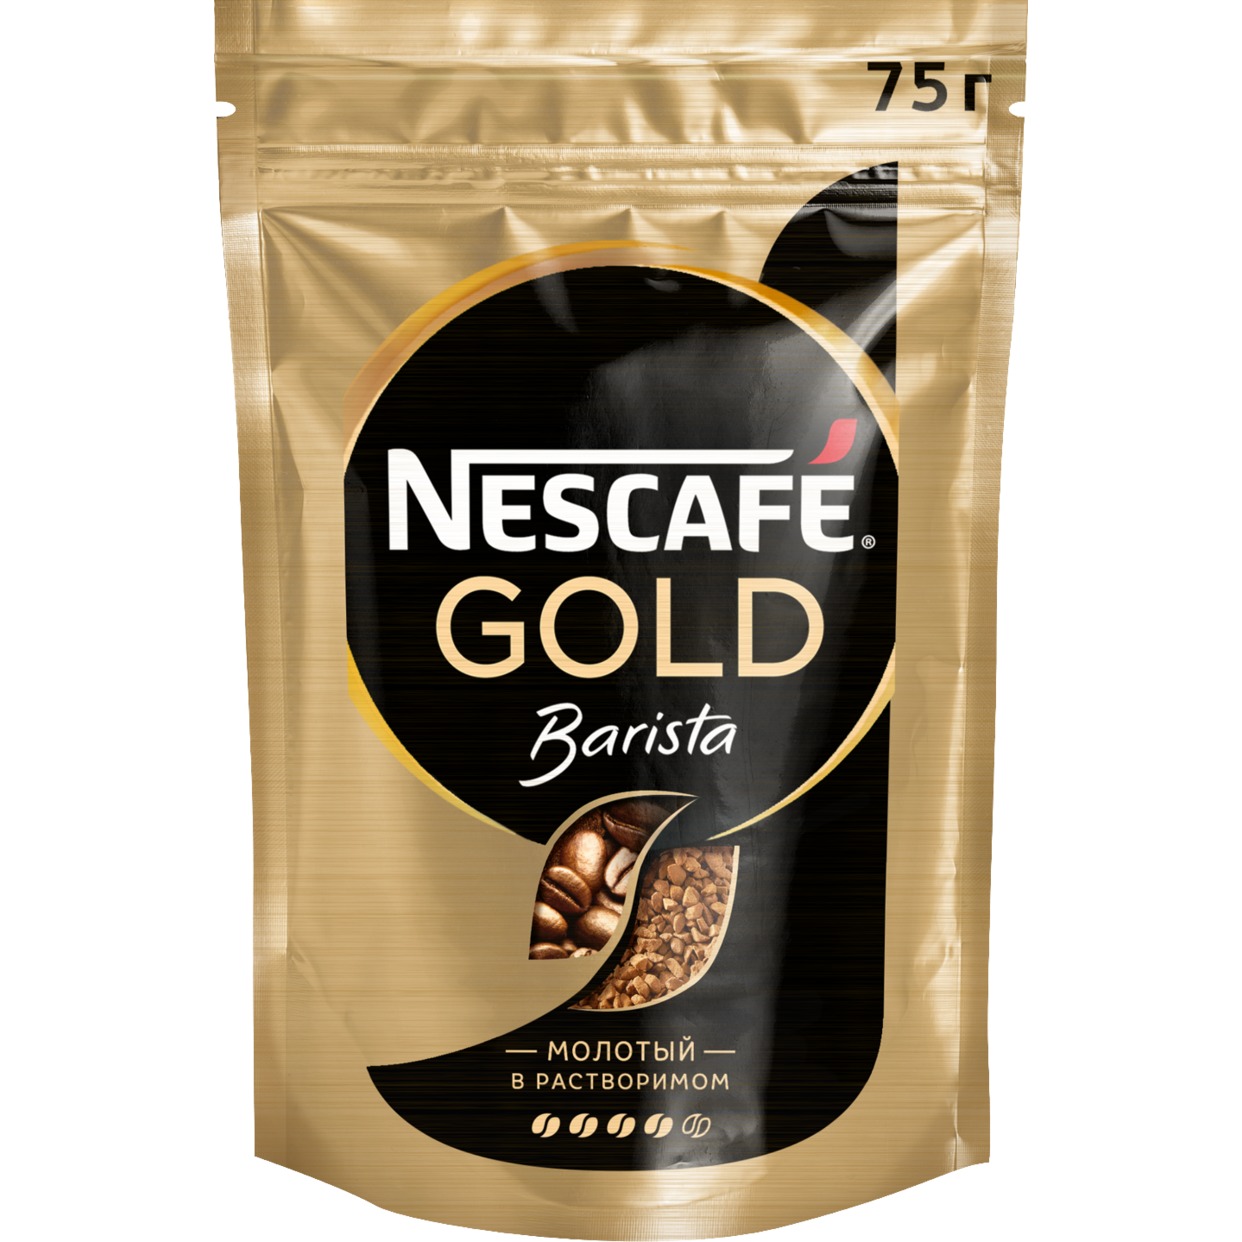 Кофе Nescafe Gold, Barista, молотый в растворимом, 75 г